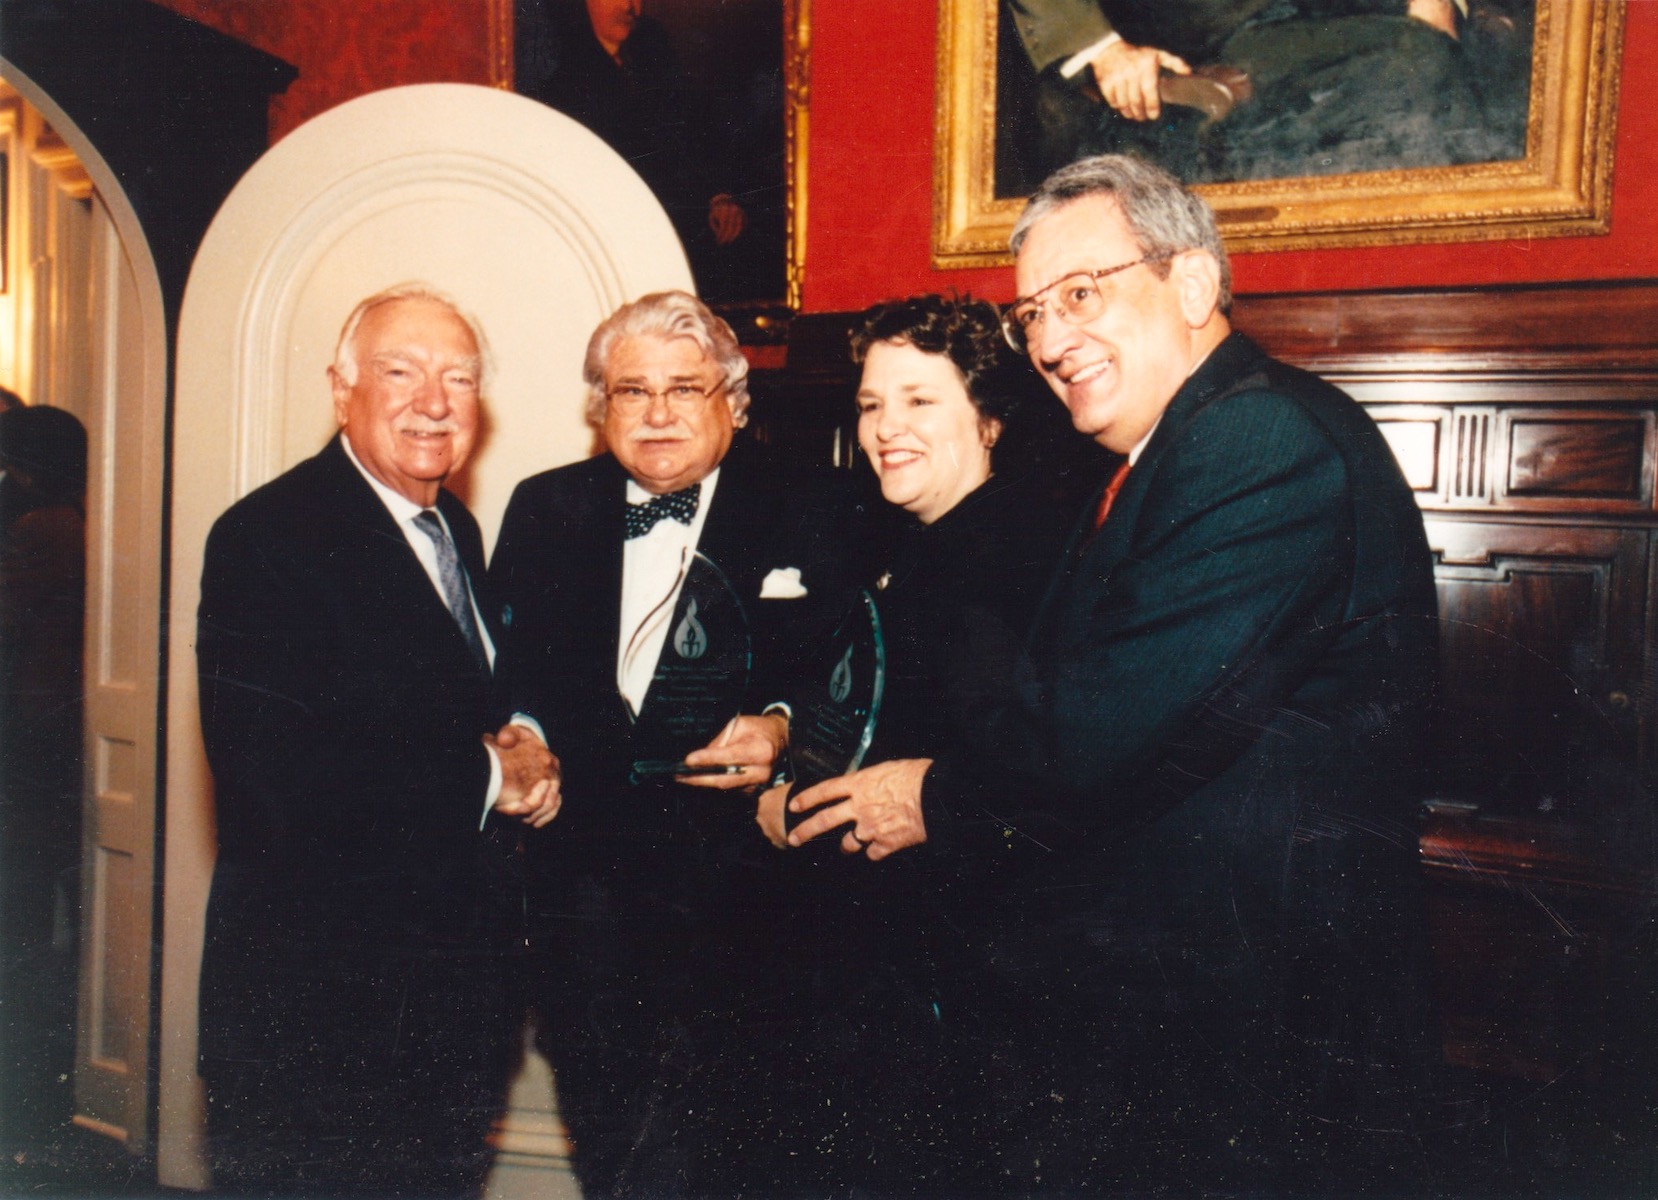 Donna receiving the Walter Cronkite “Faith & Freedom” Award, 1999, New York City, NY.
